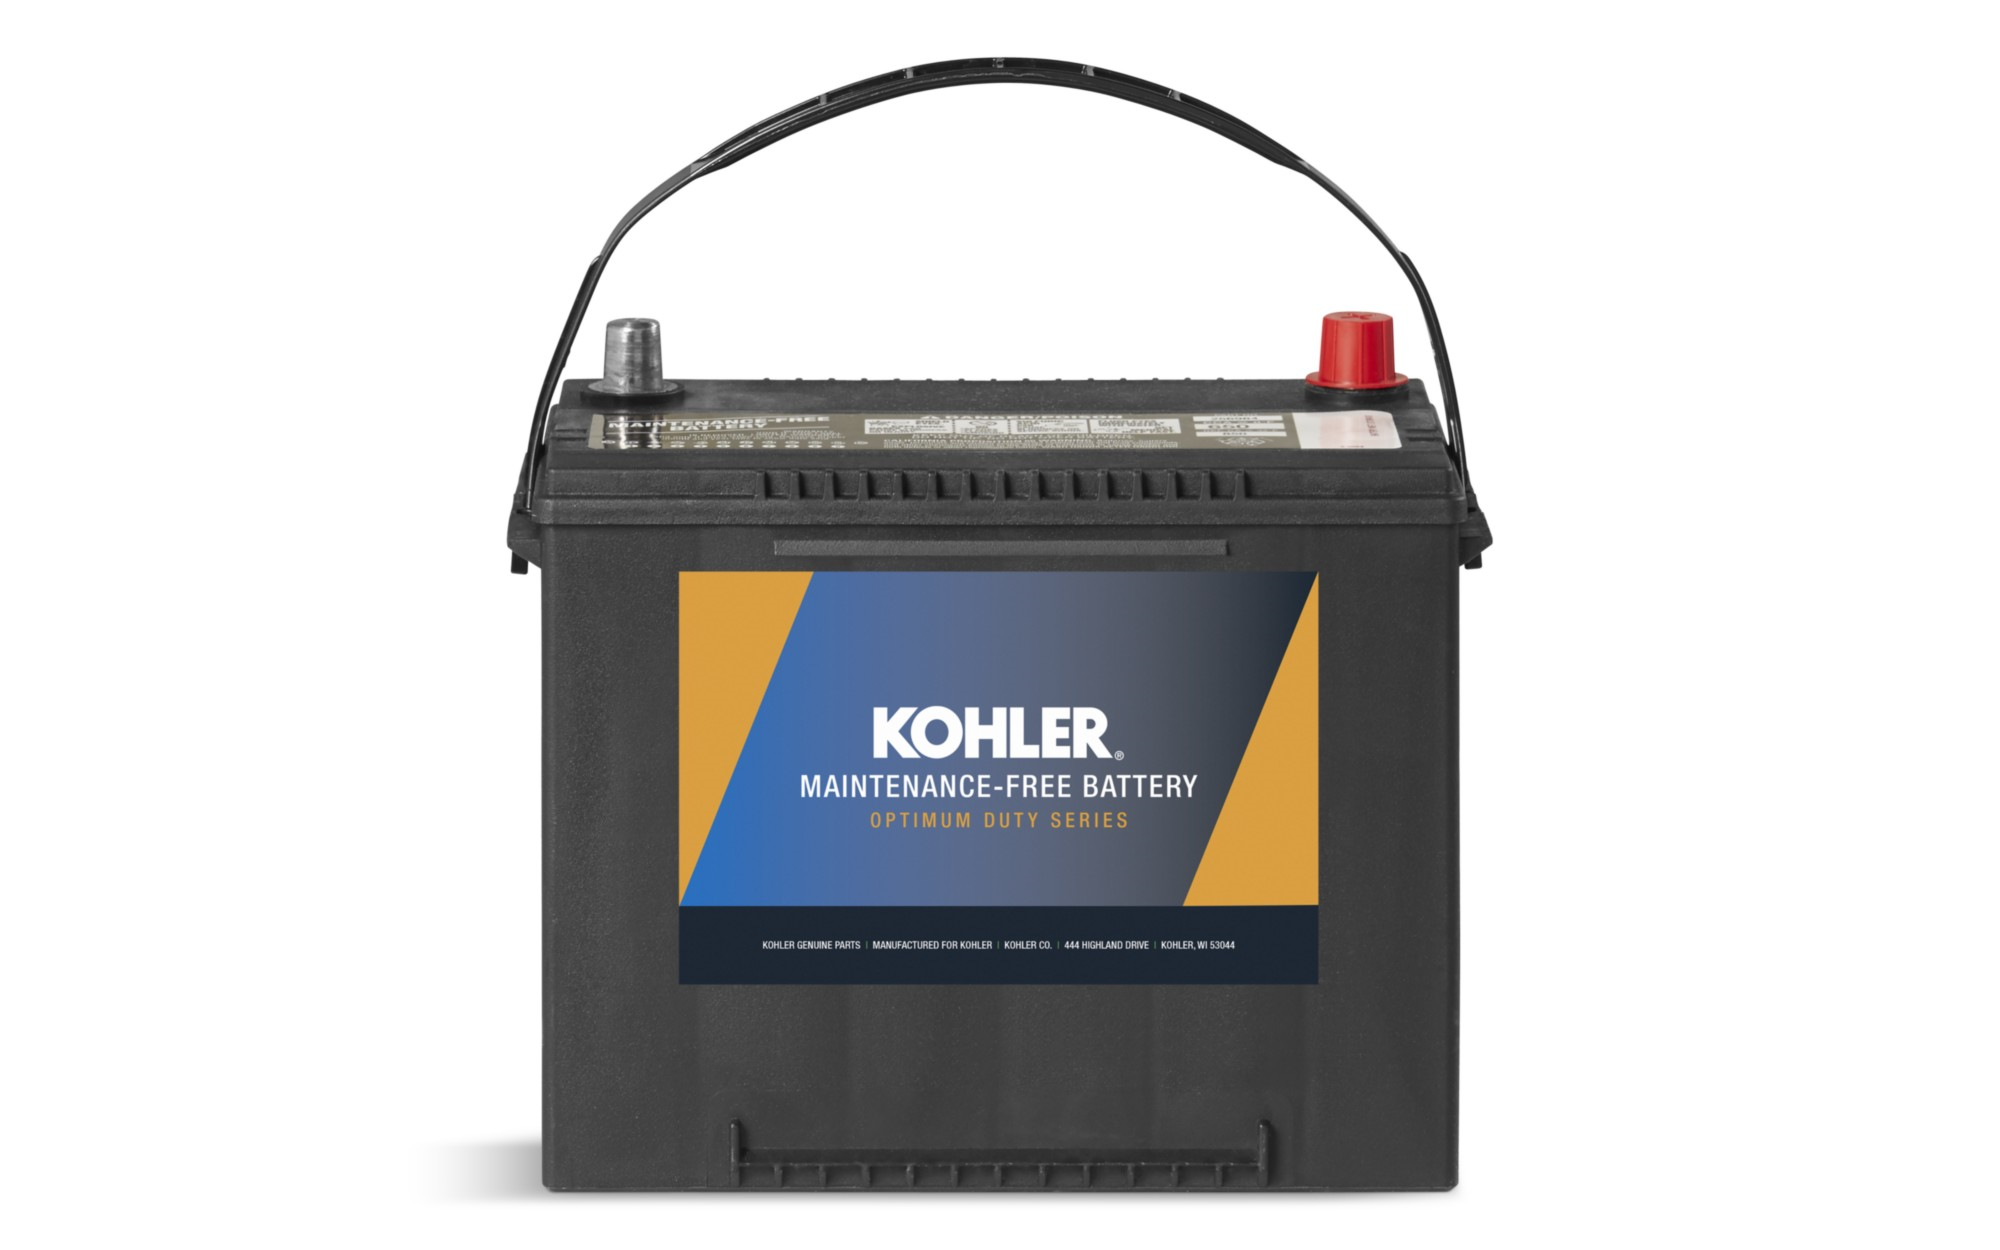 Kohler, Kohler Genuine Battery Optimum Duty Series 500CCA Group 51 Wet 12V New